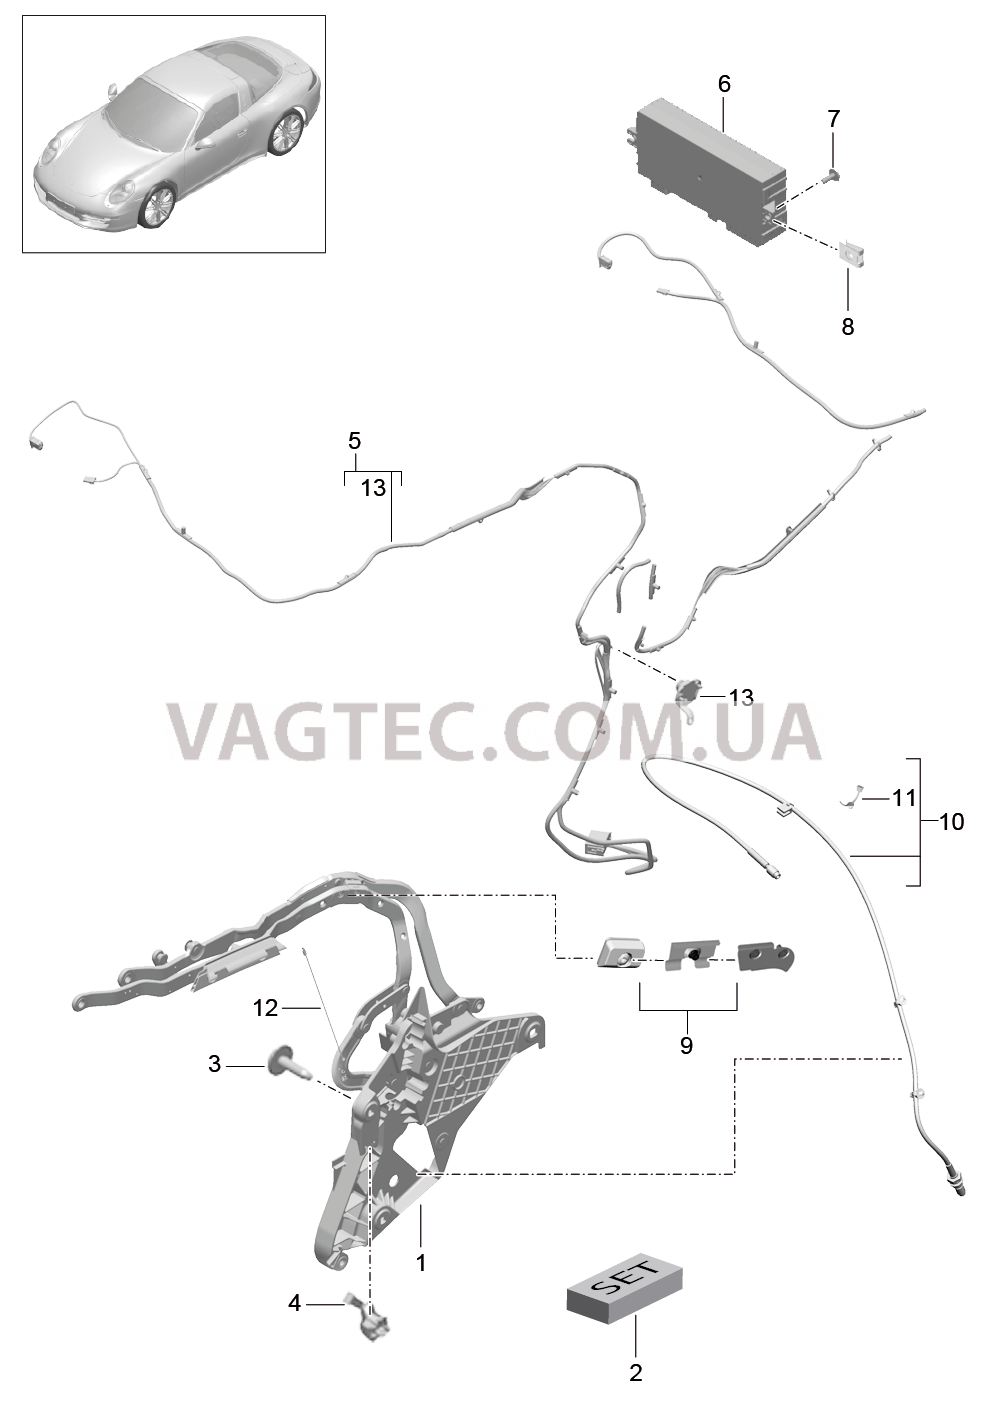 811-027 Каркас складного верха, Отдельные детали, боковой, и, Электродетали
						
						TARGA для PORSCHE 911.Carrera 2012-2016